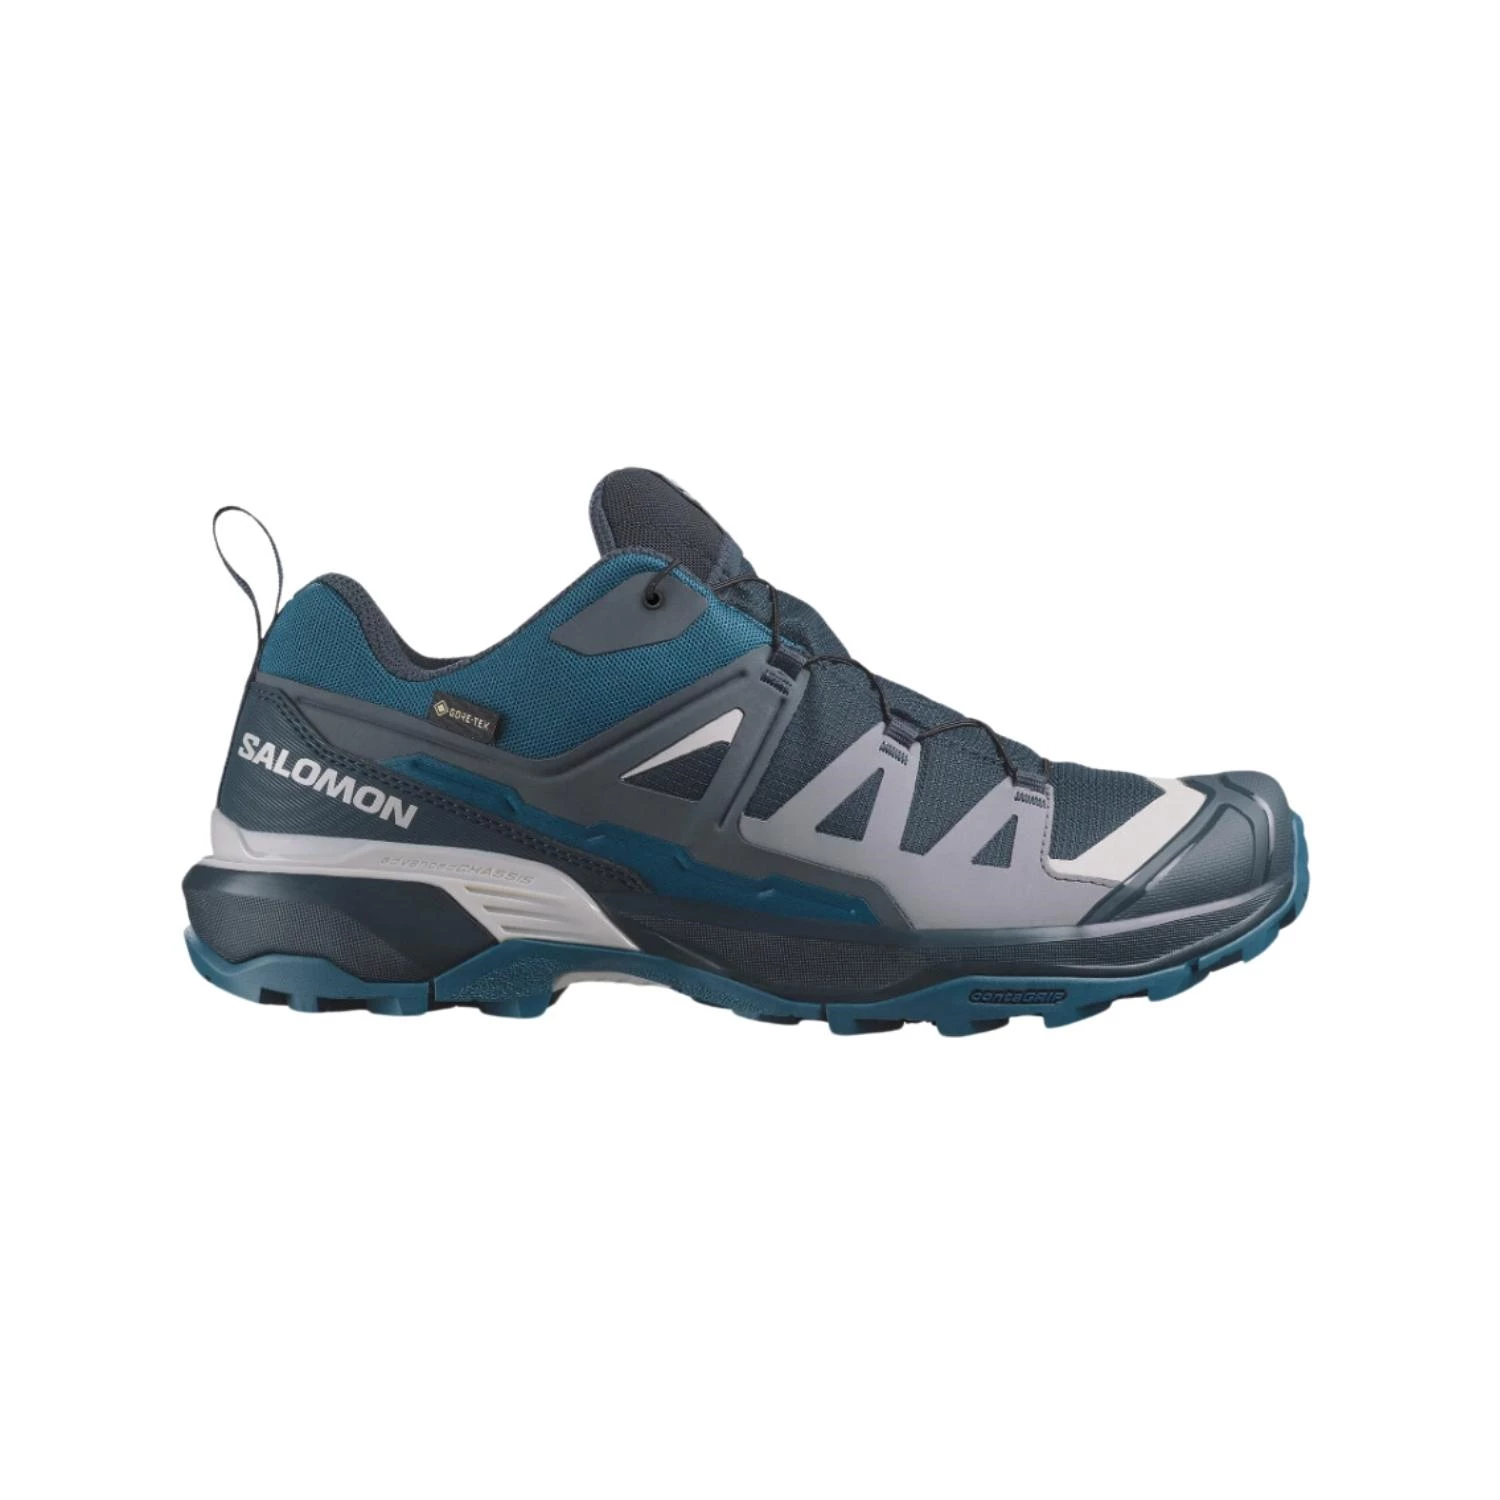 Salomon X Ultra 360 GTX Carbon wandelsneakers heren